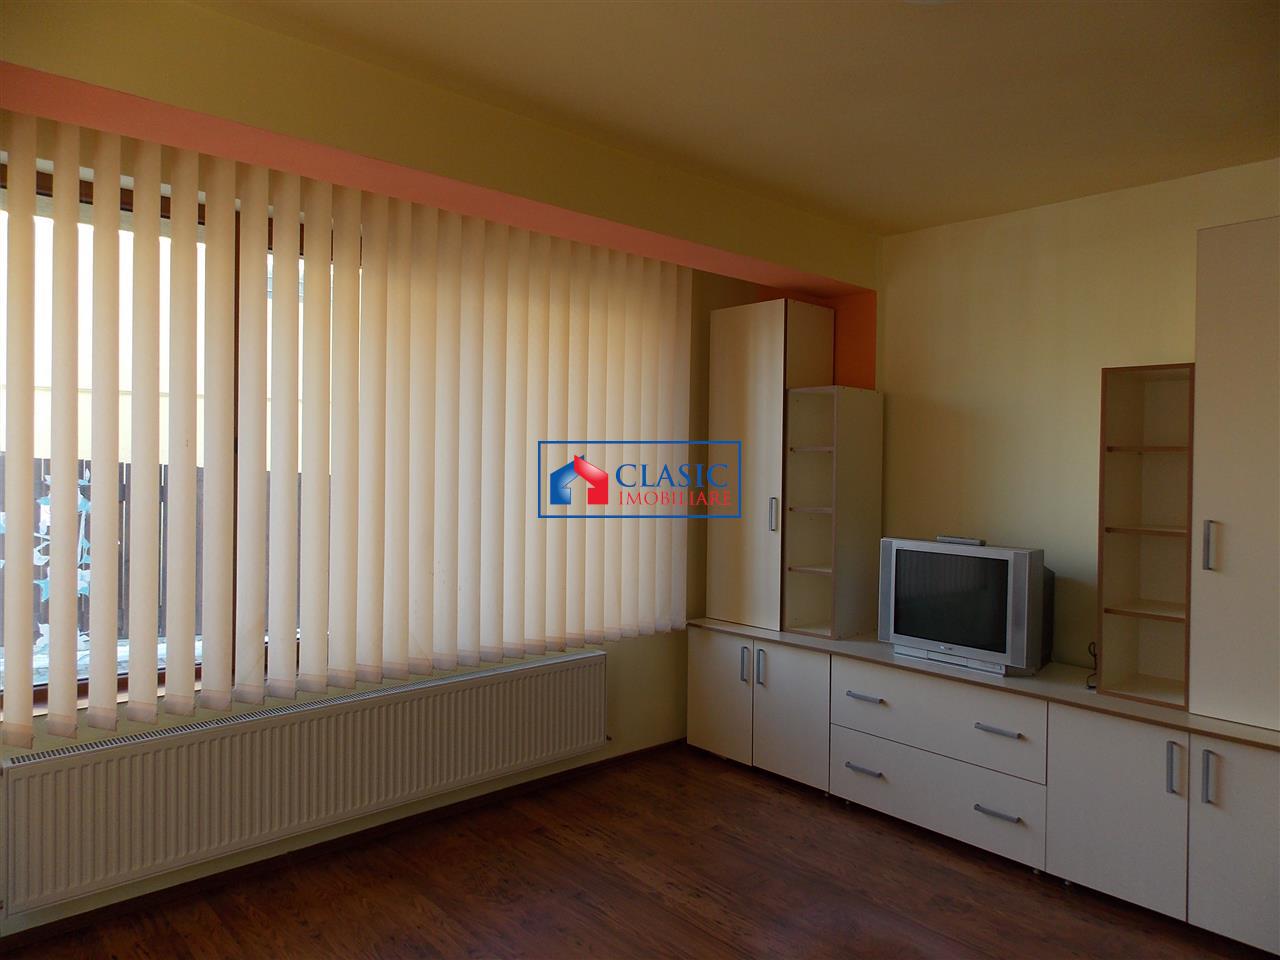 Inchiriere Apartament Manastur, Cluj Napoca